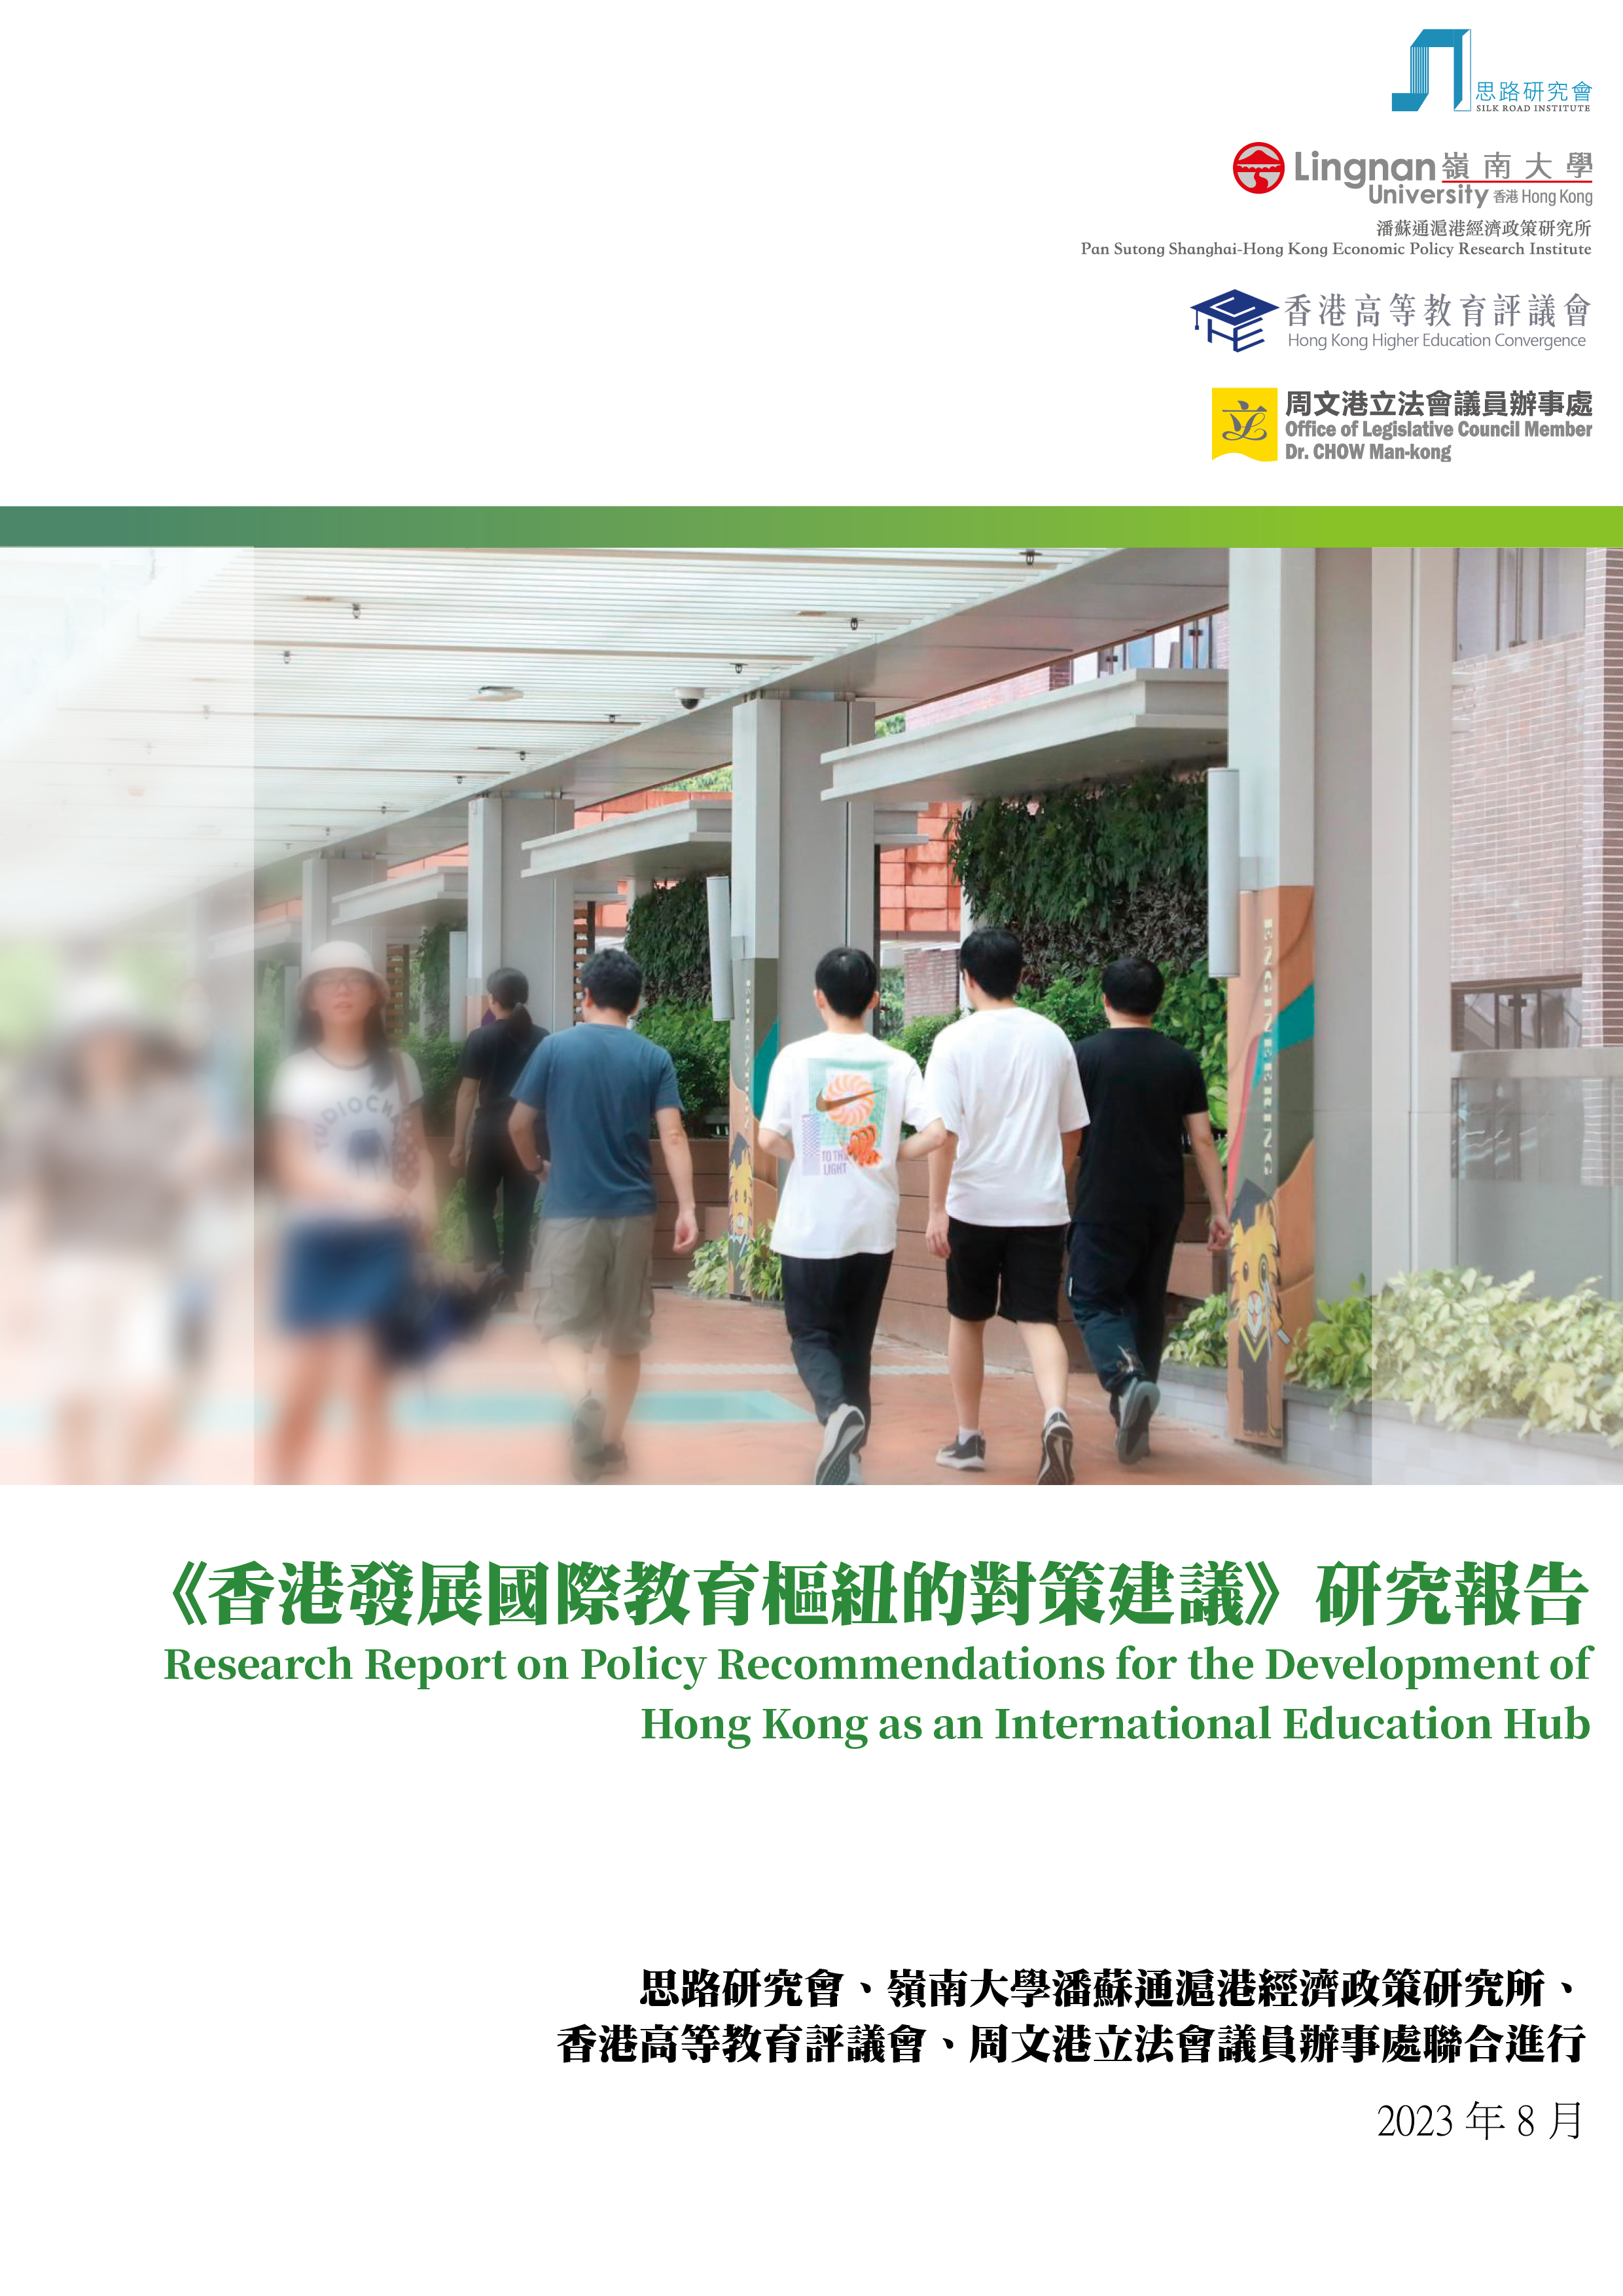 《香港發展國際教育樞紐的對策建議》研究報告